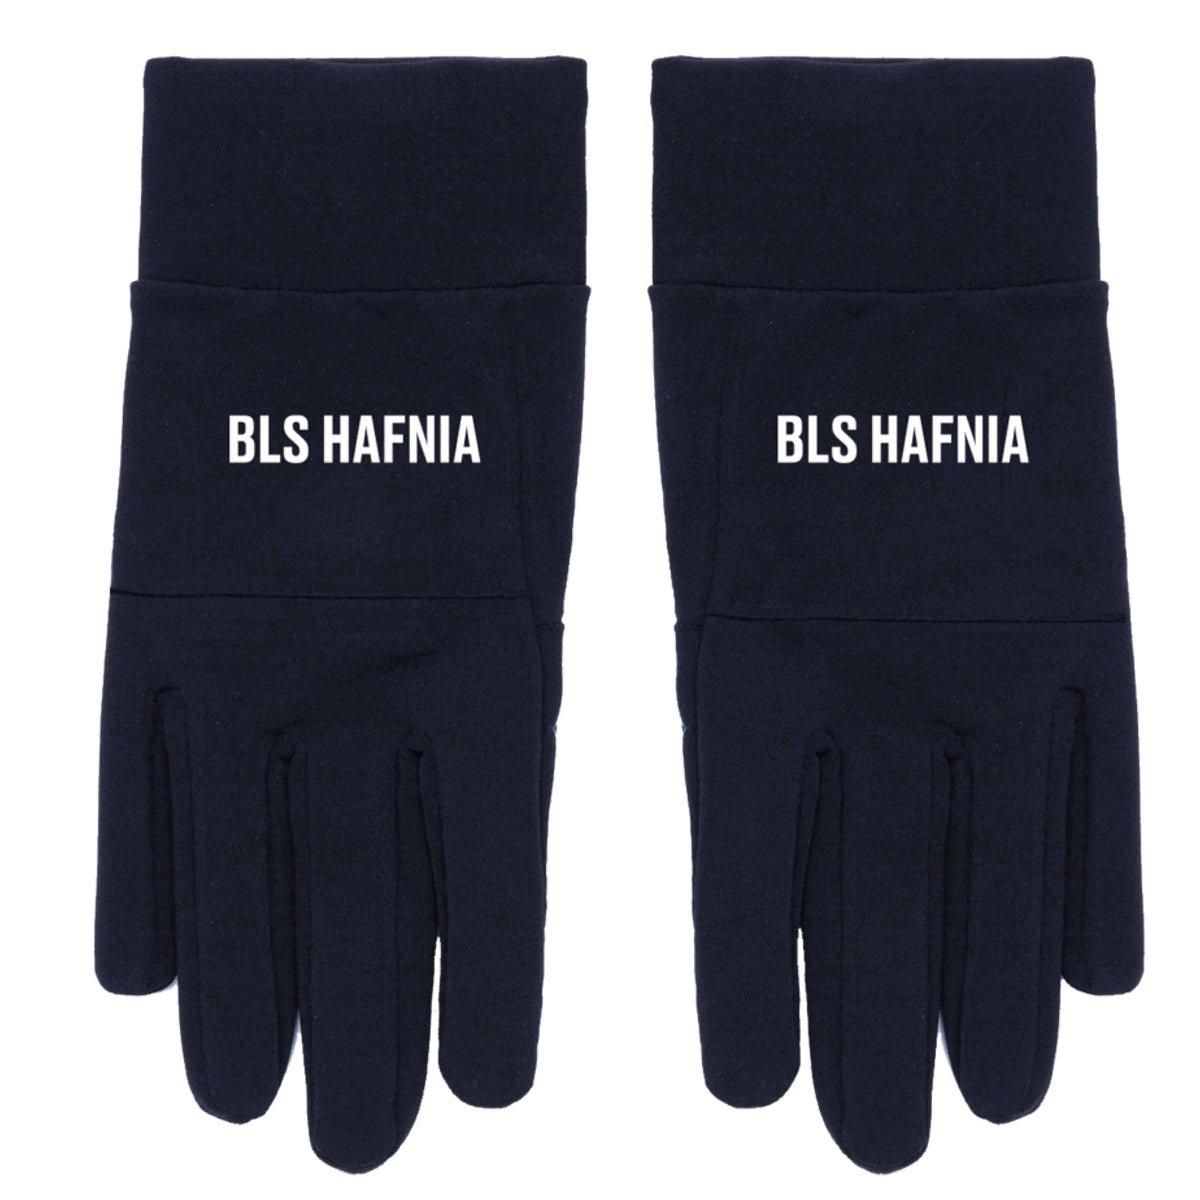 BLS Hafnia Handsker · Navy - BLS HAFNIA - Kul og Koks